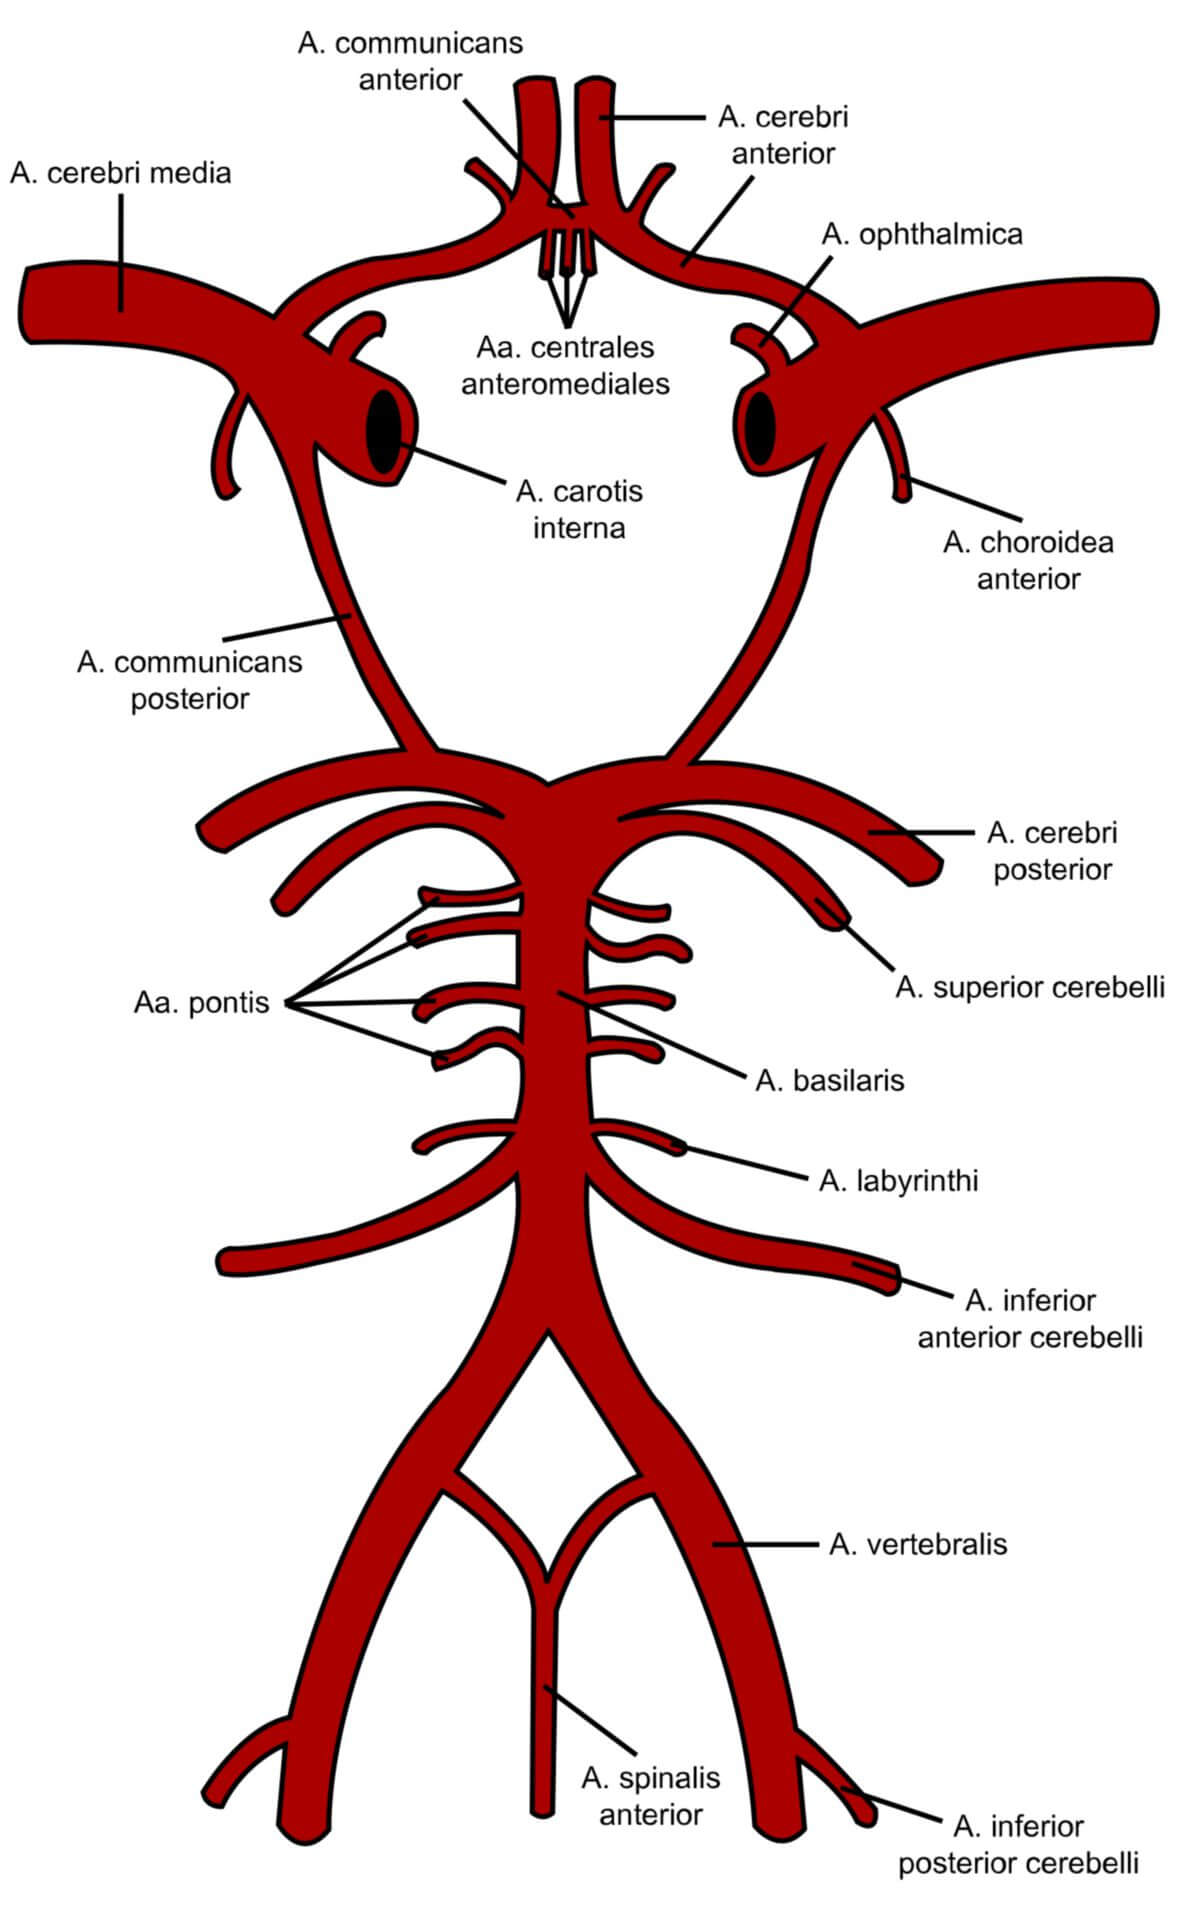 Circulus arteriosus cerebri